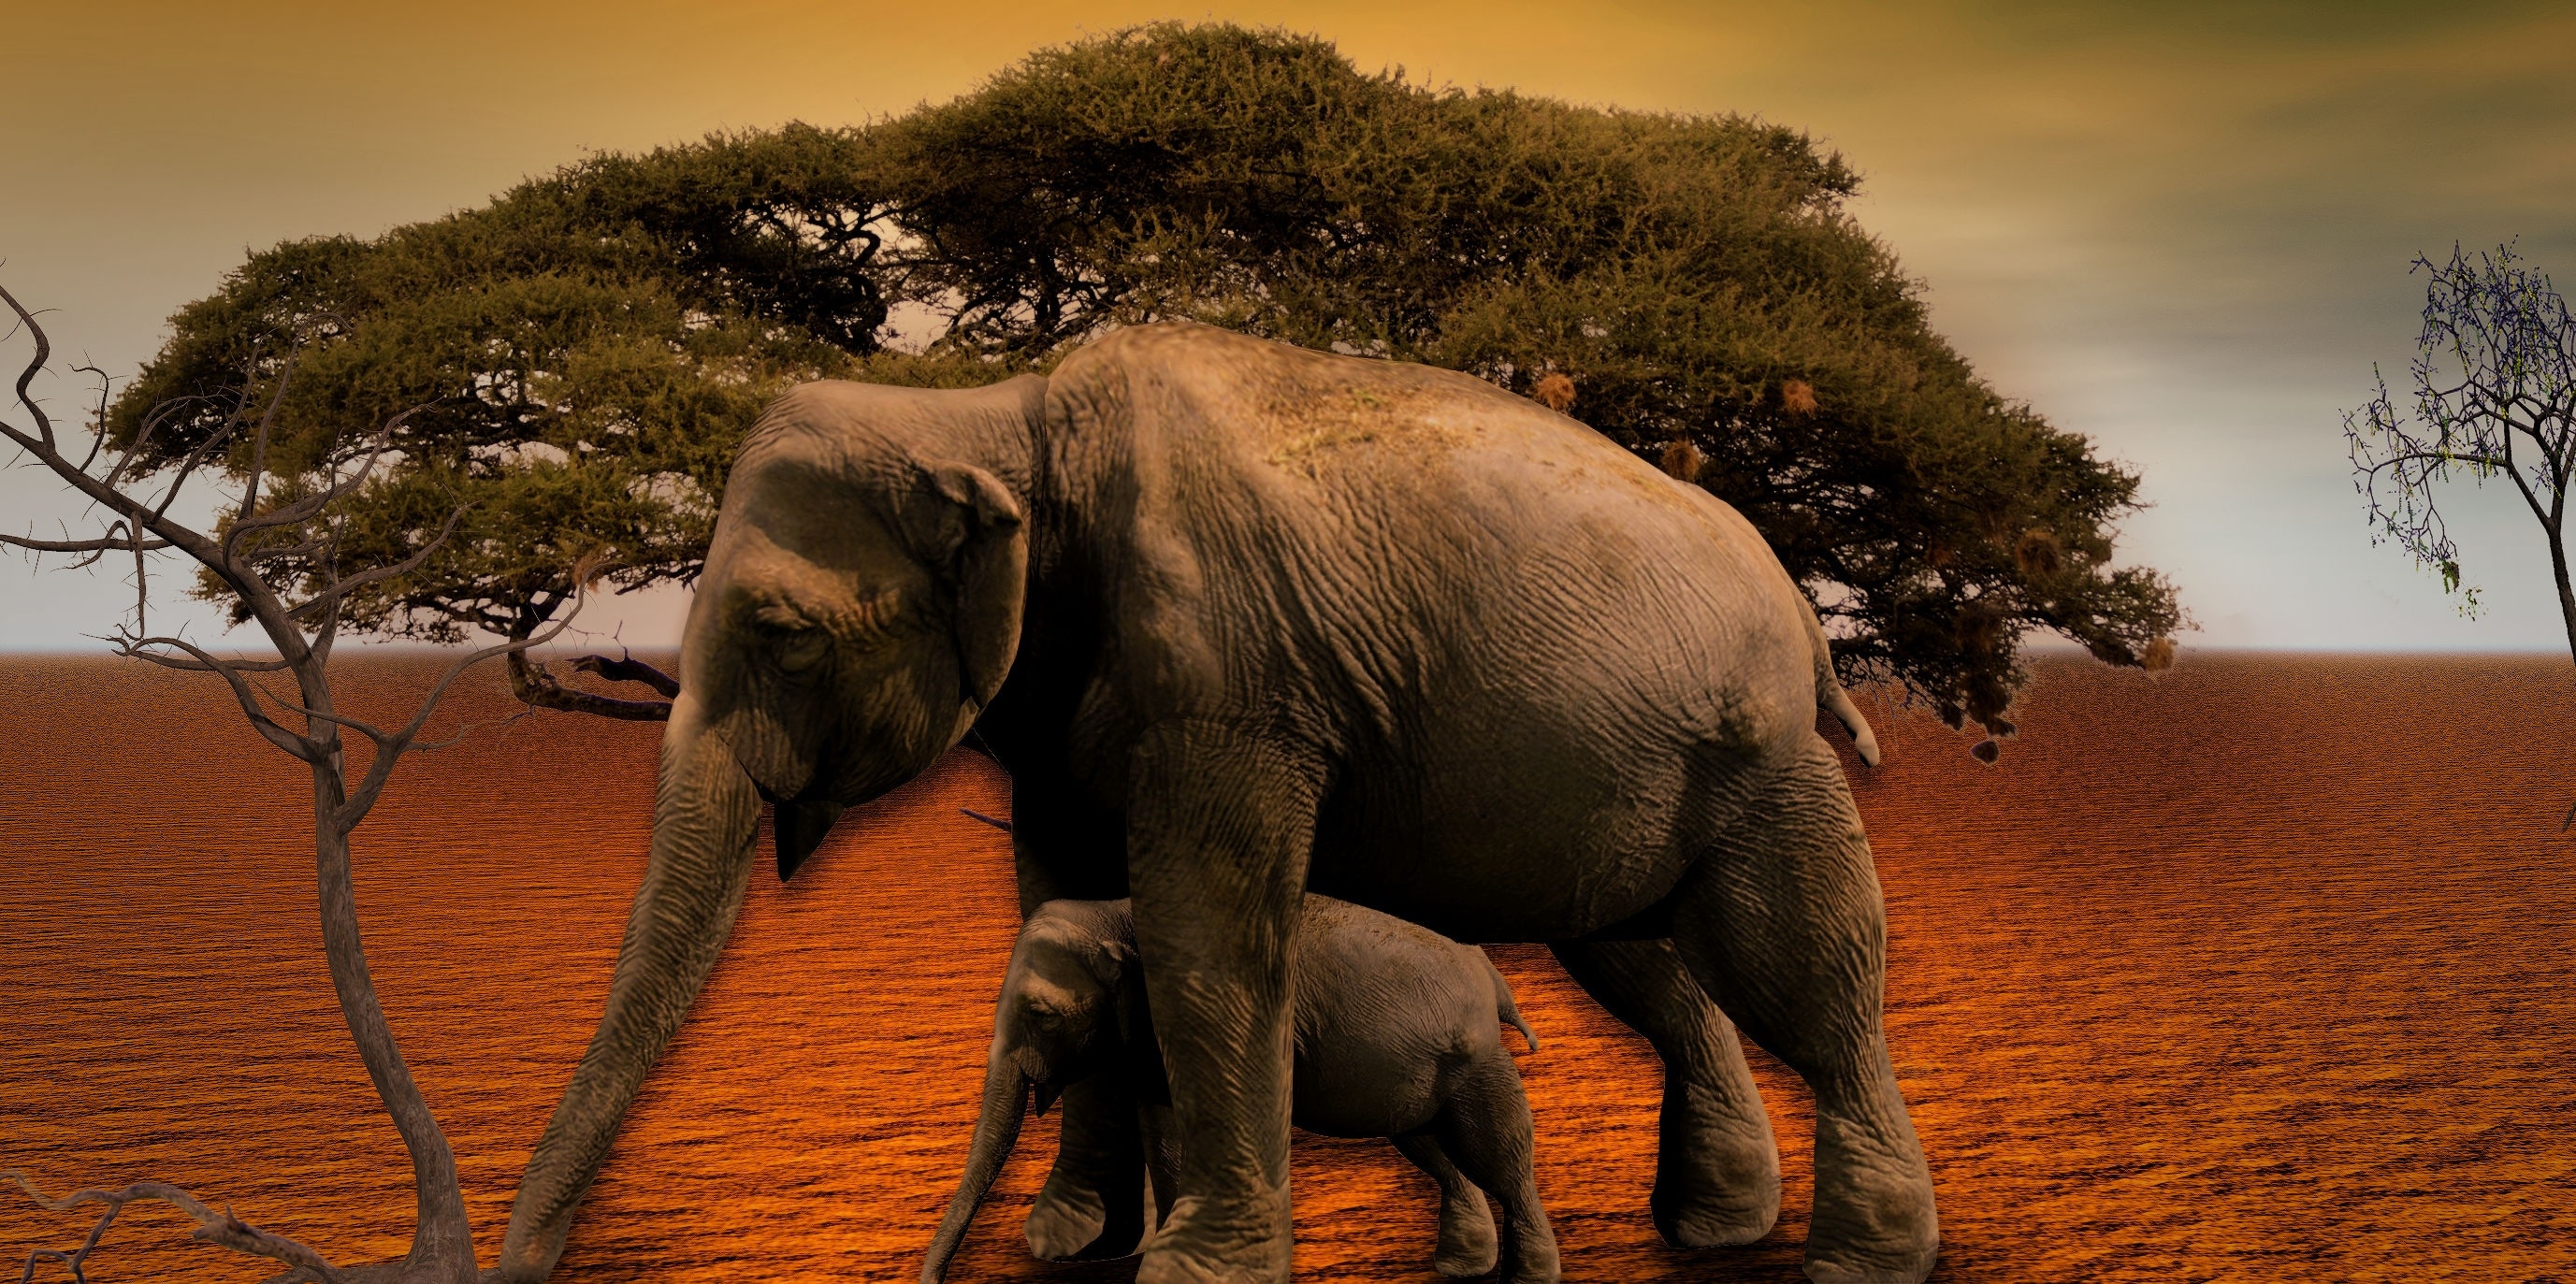 adult and baby elephants